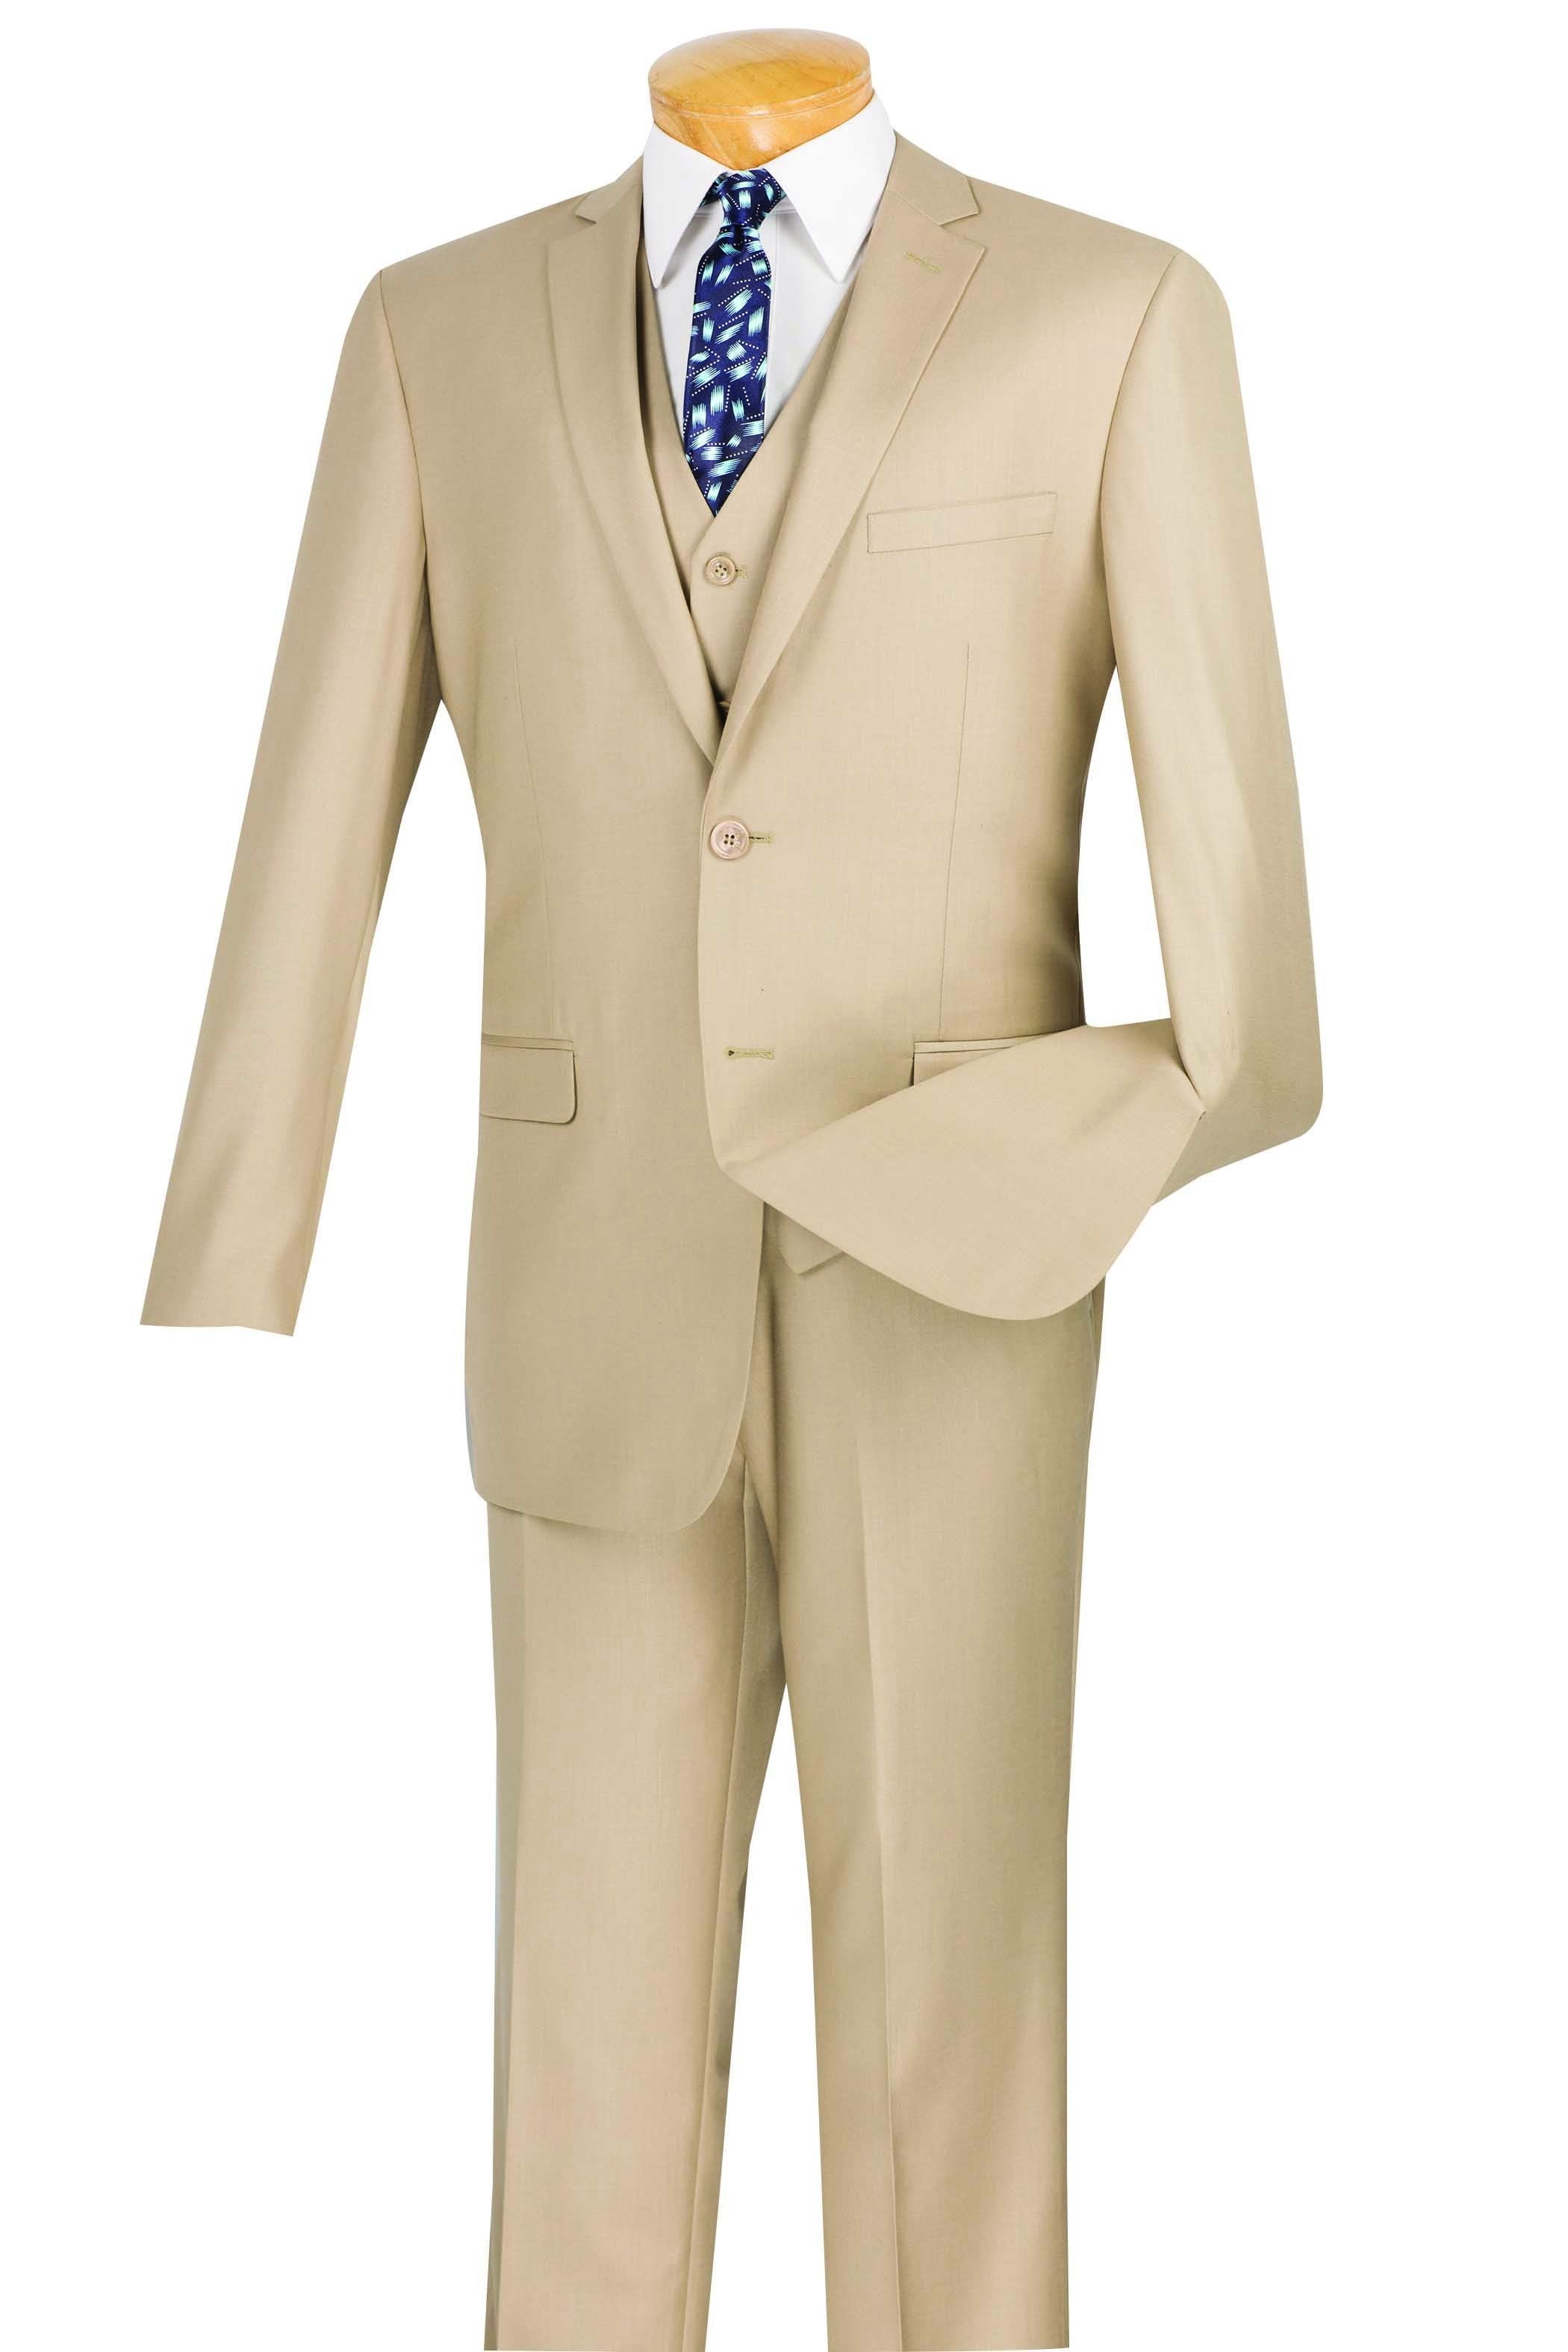 Slim Fit Men's Suit 3 Piece 2 Button in Beige | Men's Fashion